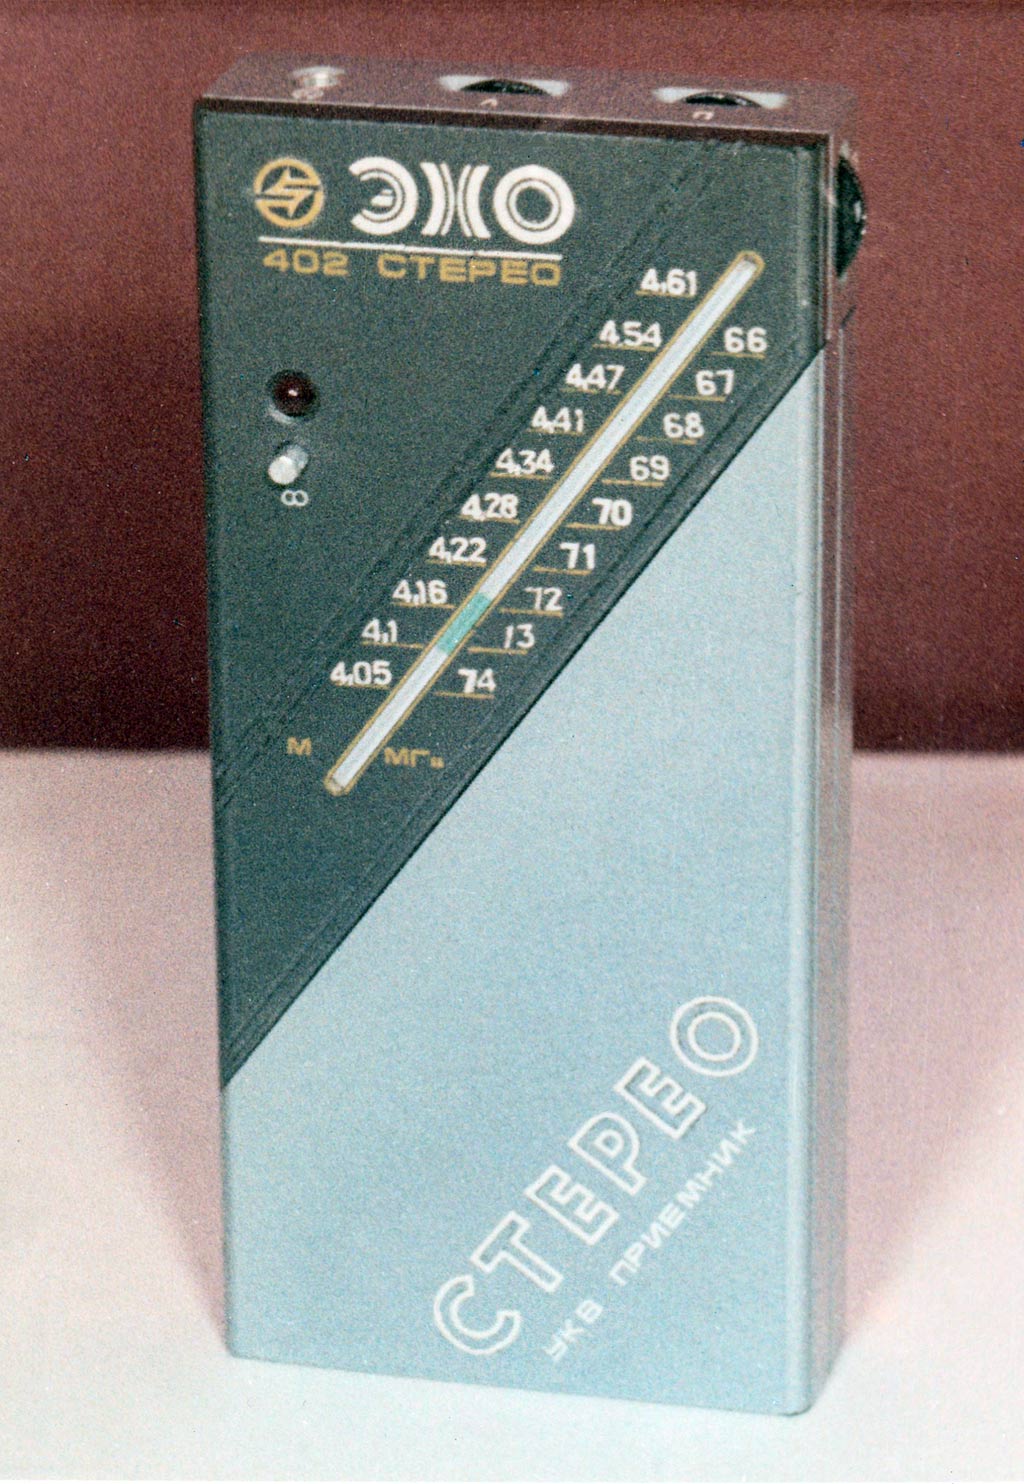 Эхо-402-стерео